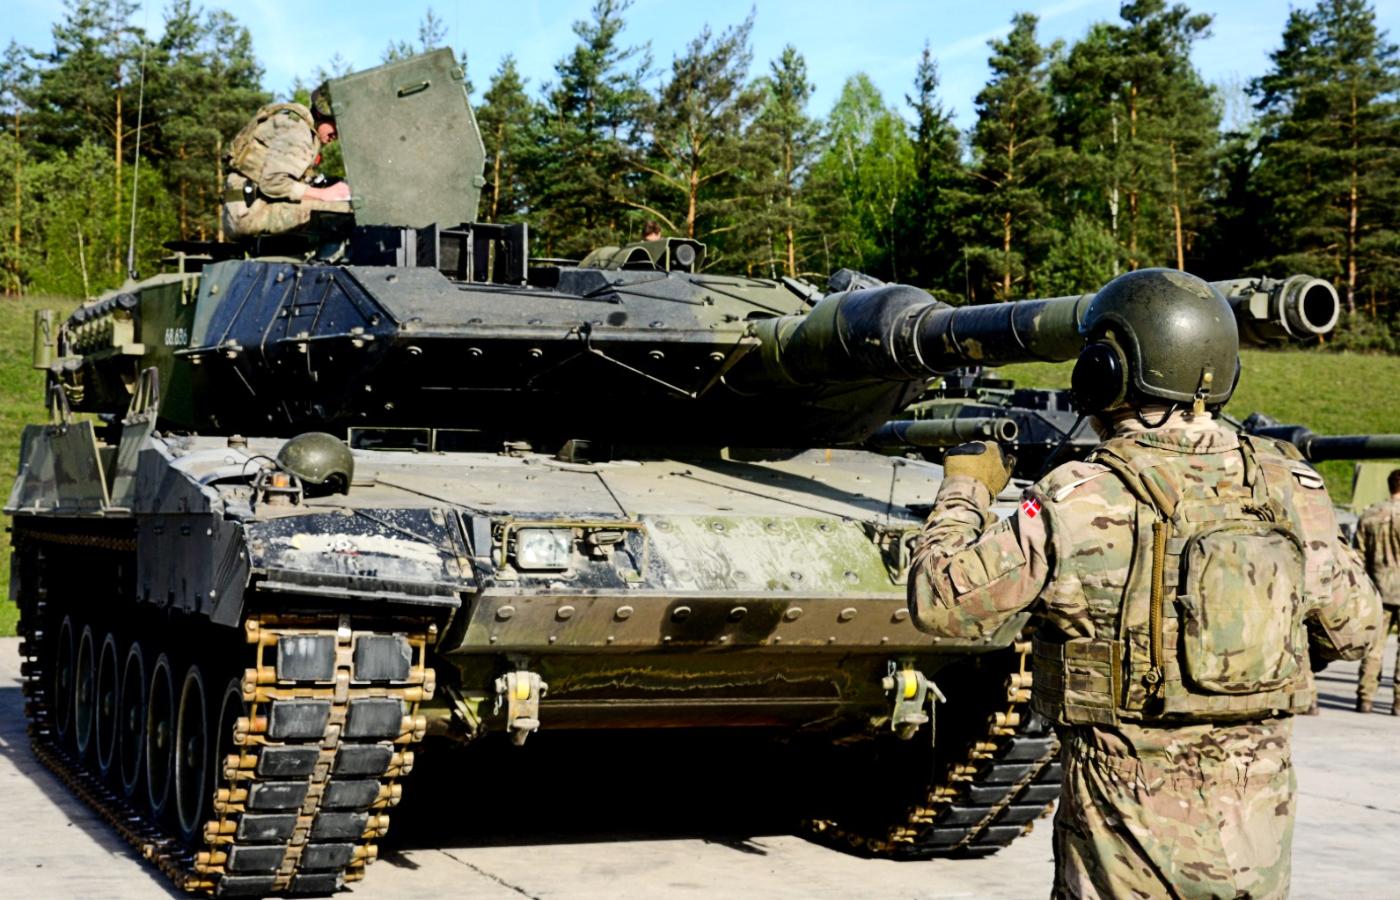 Leopard 2 duńskiej armii podczas ćwiczeń w niemieckim Grafenwöhr w maju 2016 r.